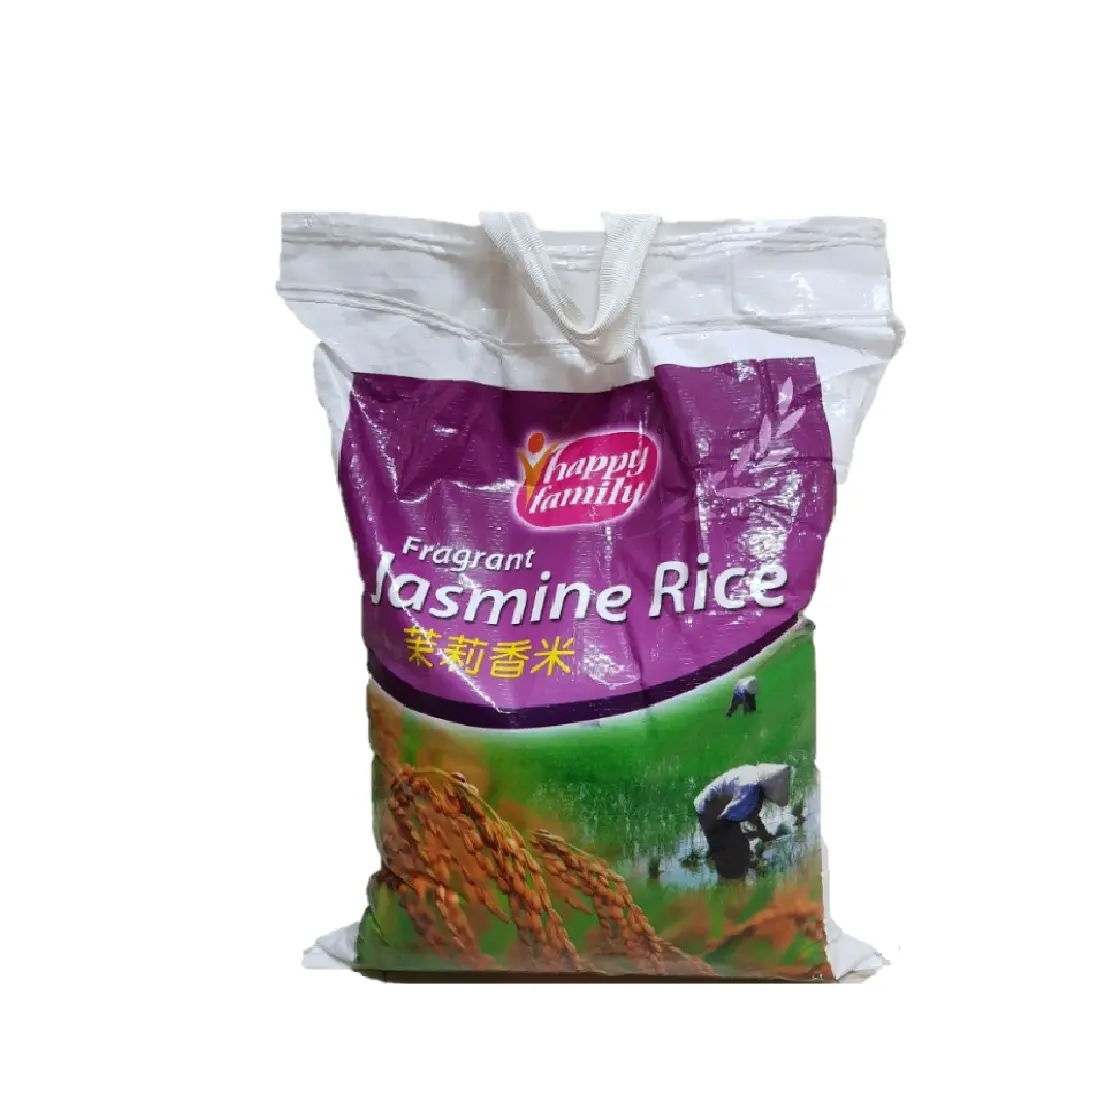 Jamine pirinç lezzetli aromatik tür parfüm lezzet beyaz renk ile Vietnam- Riz- Arroz- Whatsapp Linda 0084 989 322 607